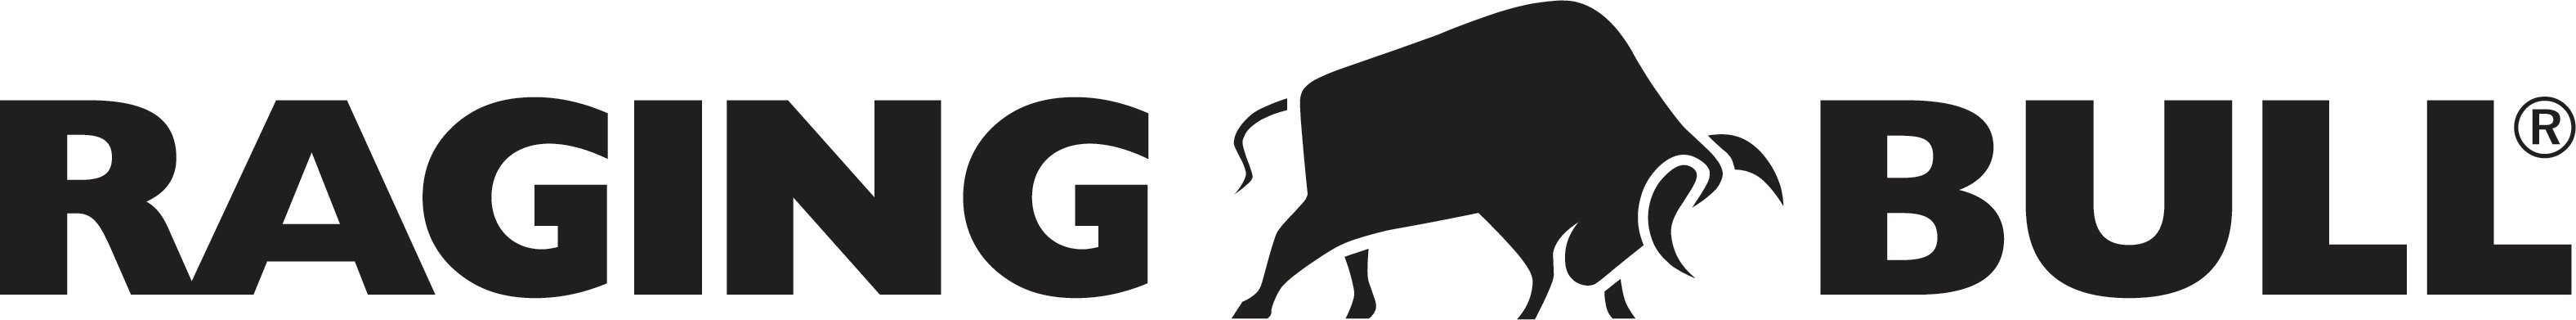 Brand logo for Raging Bull